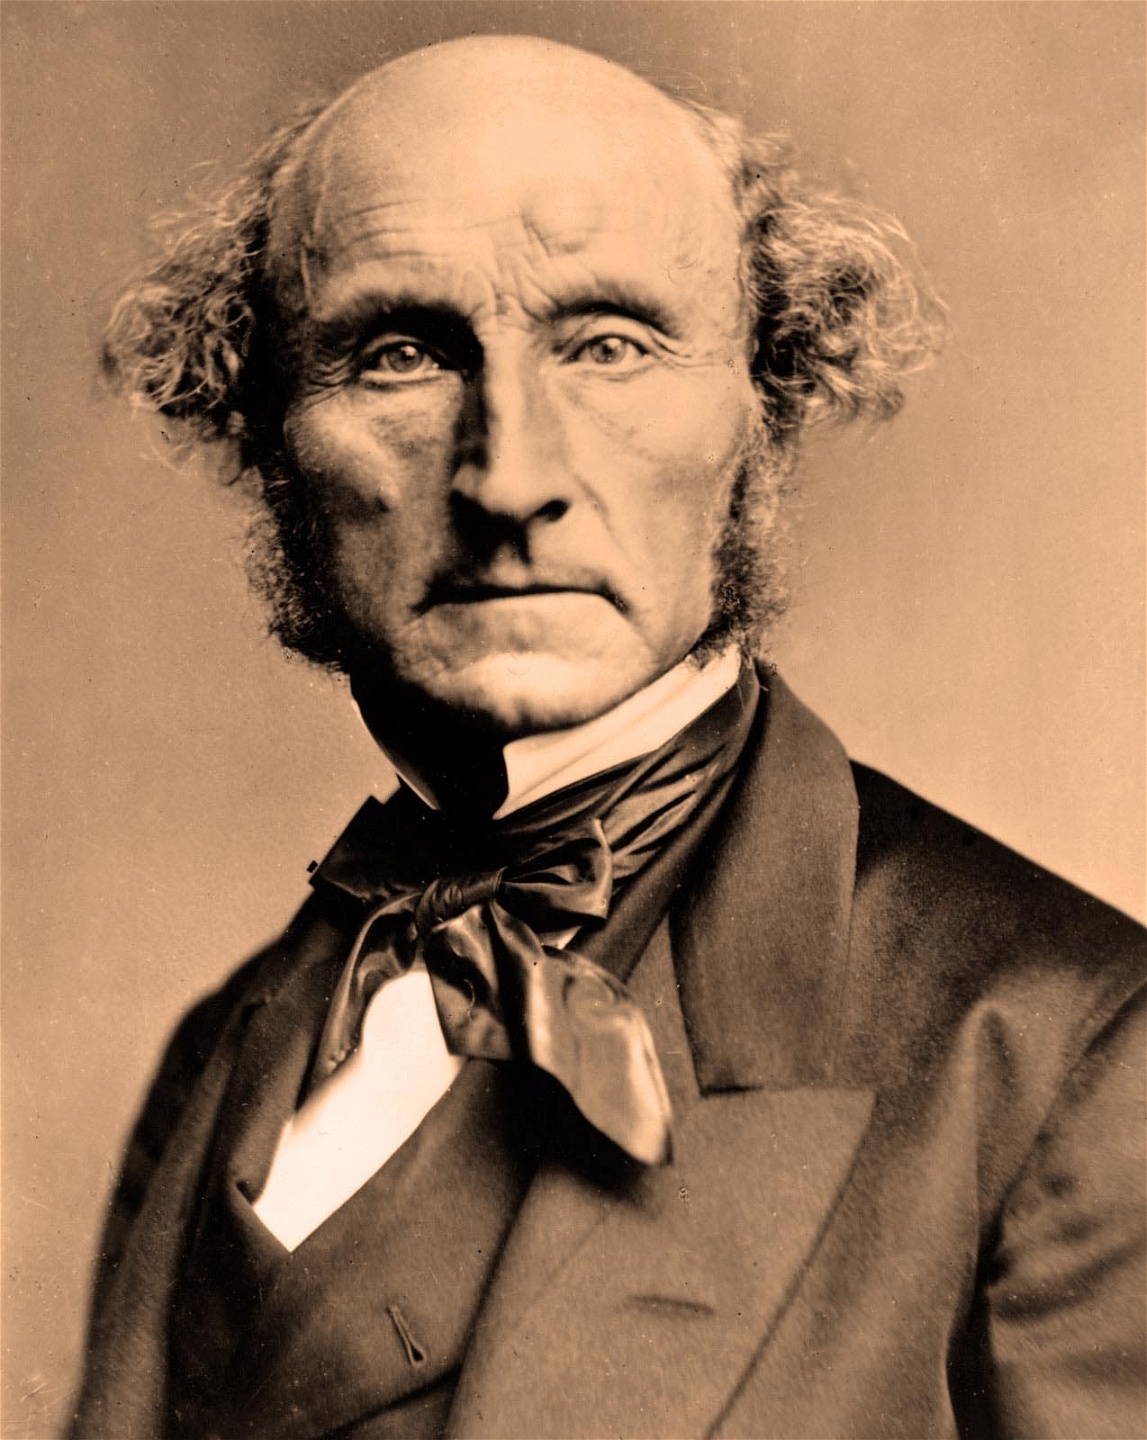 Enligt 1800-talsliberalen John Stuart Mill skulle det politiska deltagandet hjälpa människor att anta ett bredare perspektiv på samhällets problem, utbilda dem i tekniska och vetenskapliga frågor, och öka deras känsla för det allmänna bästa.